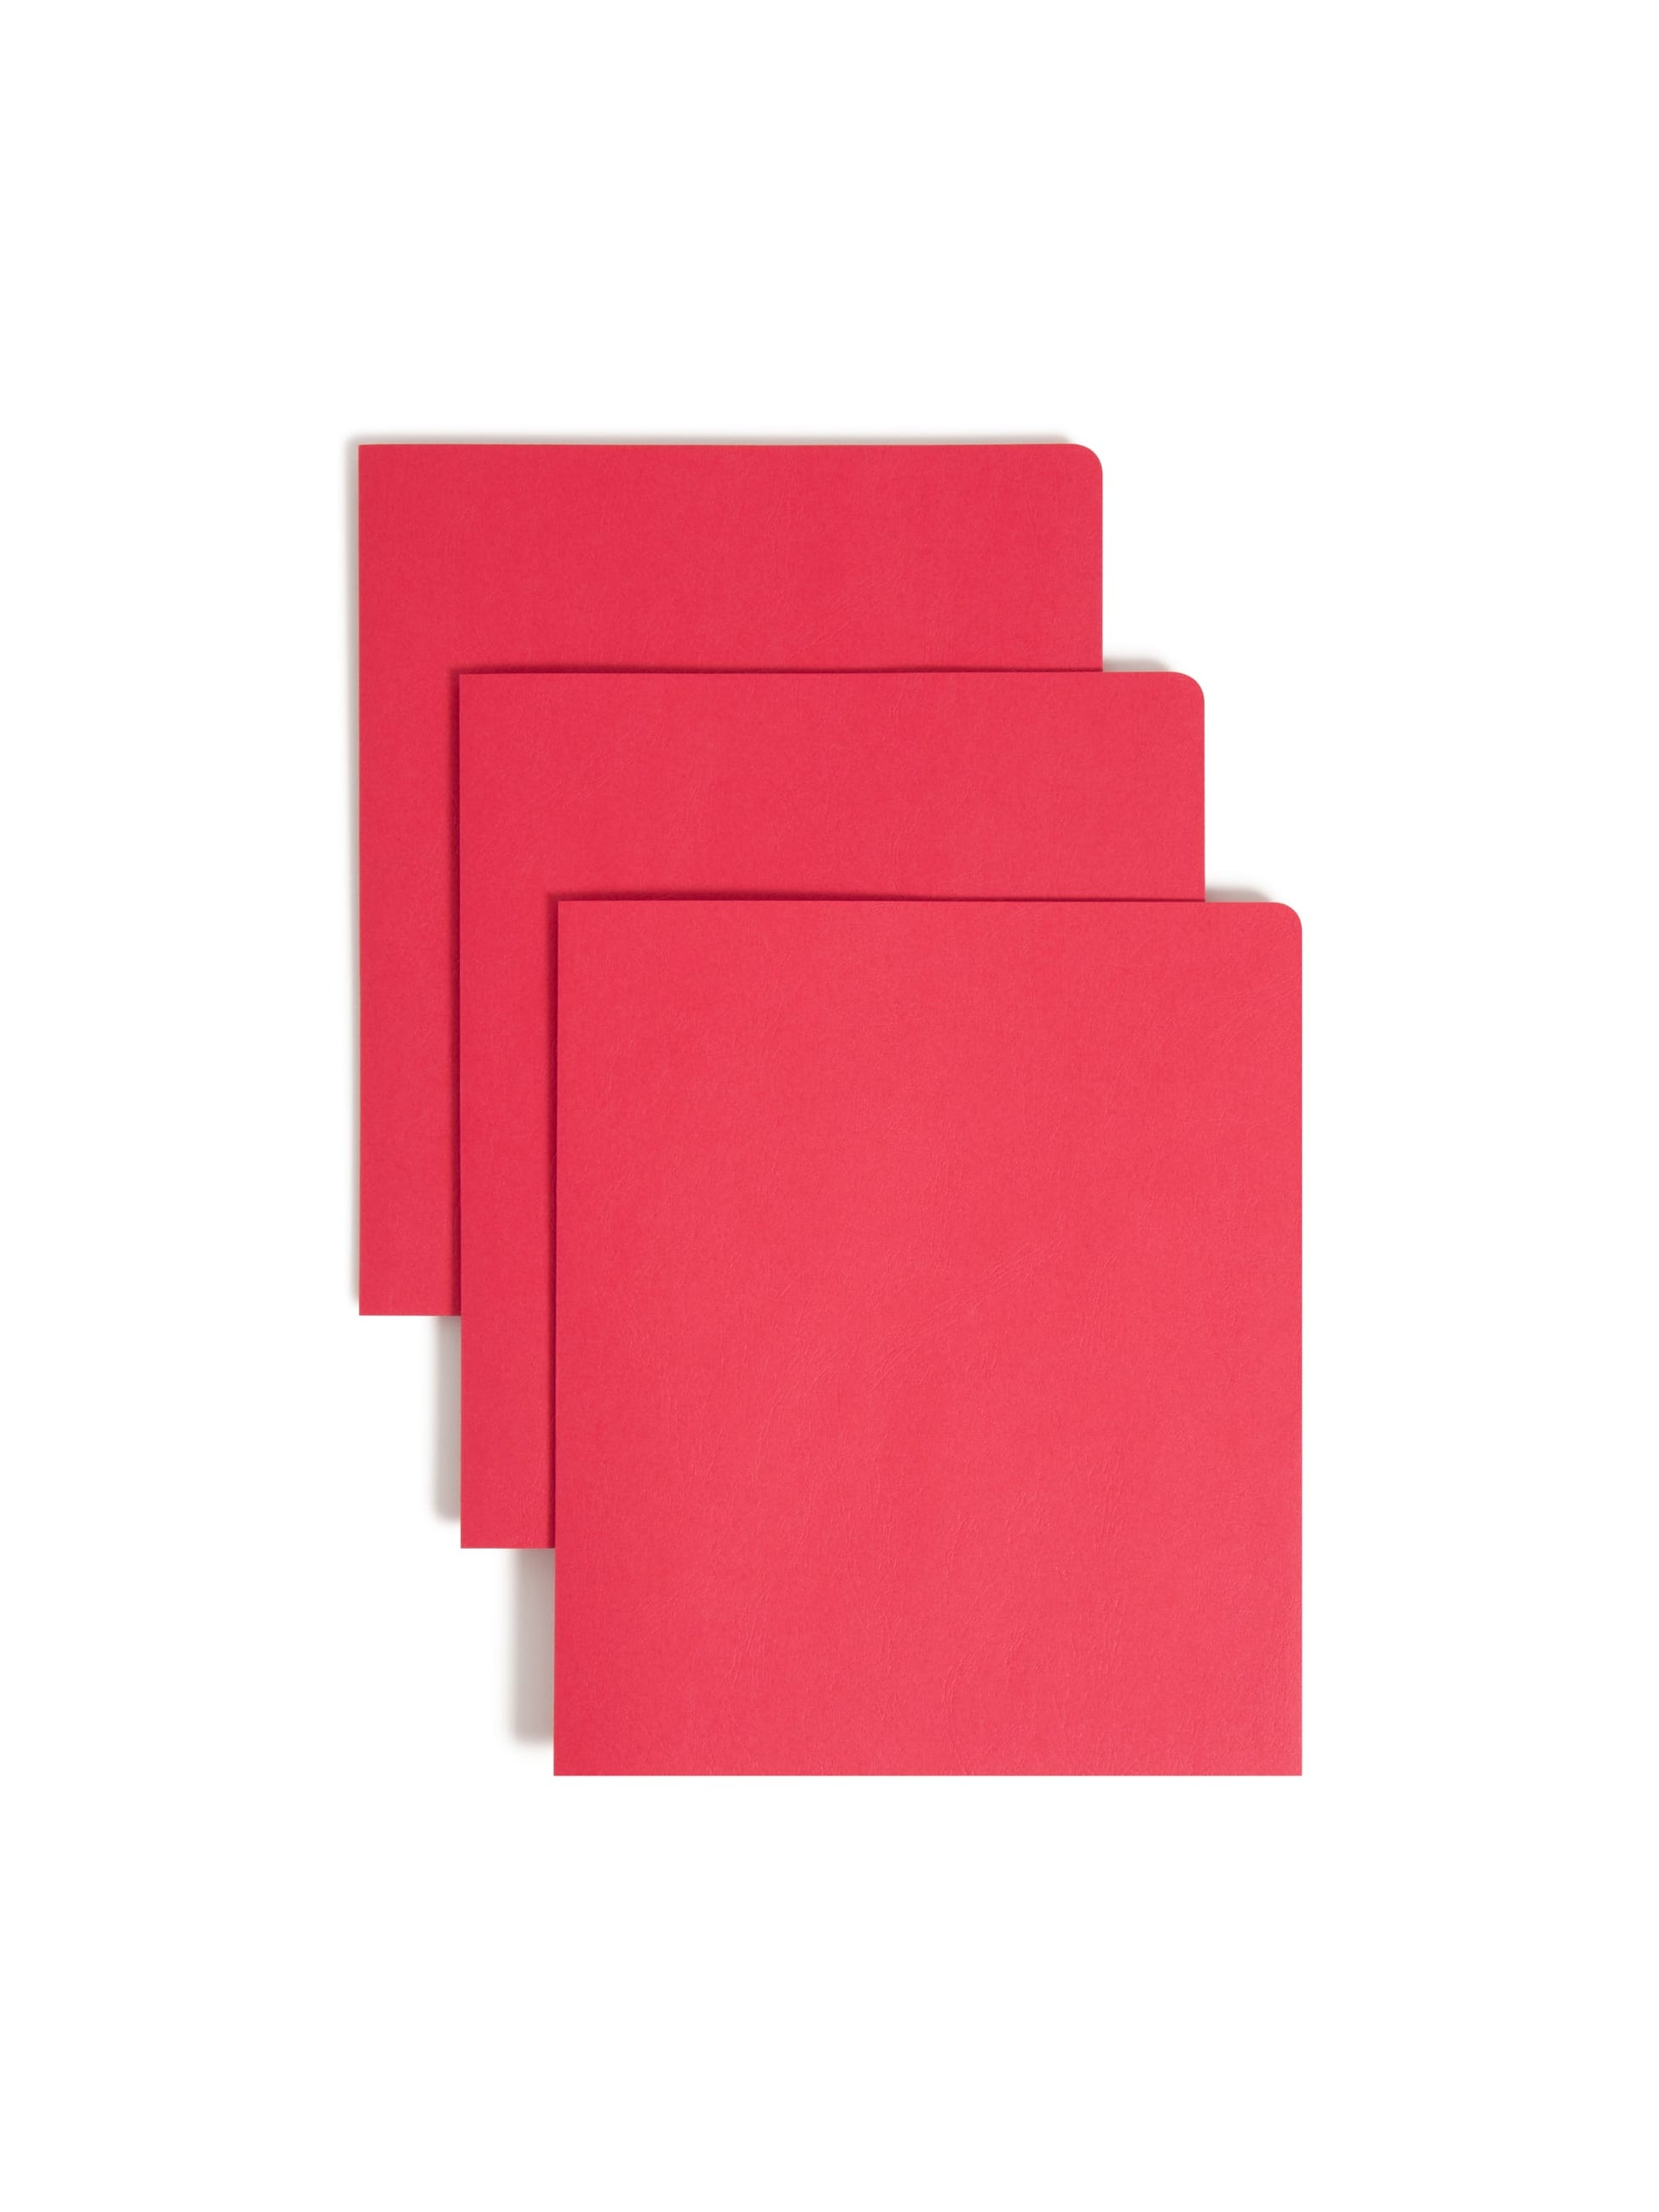 Standard Two-Pocket Folders, Red Color, Letter Size, Set of 0, 30086486878594